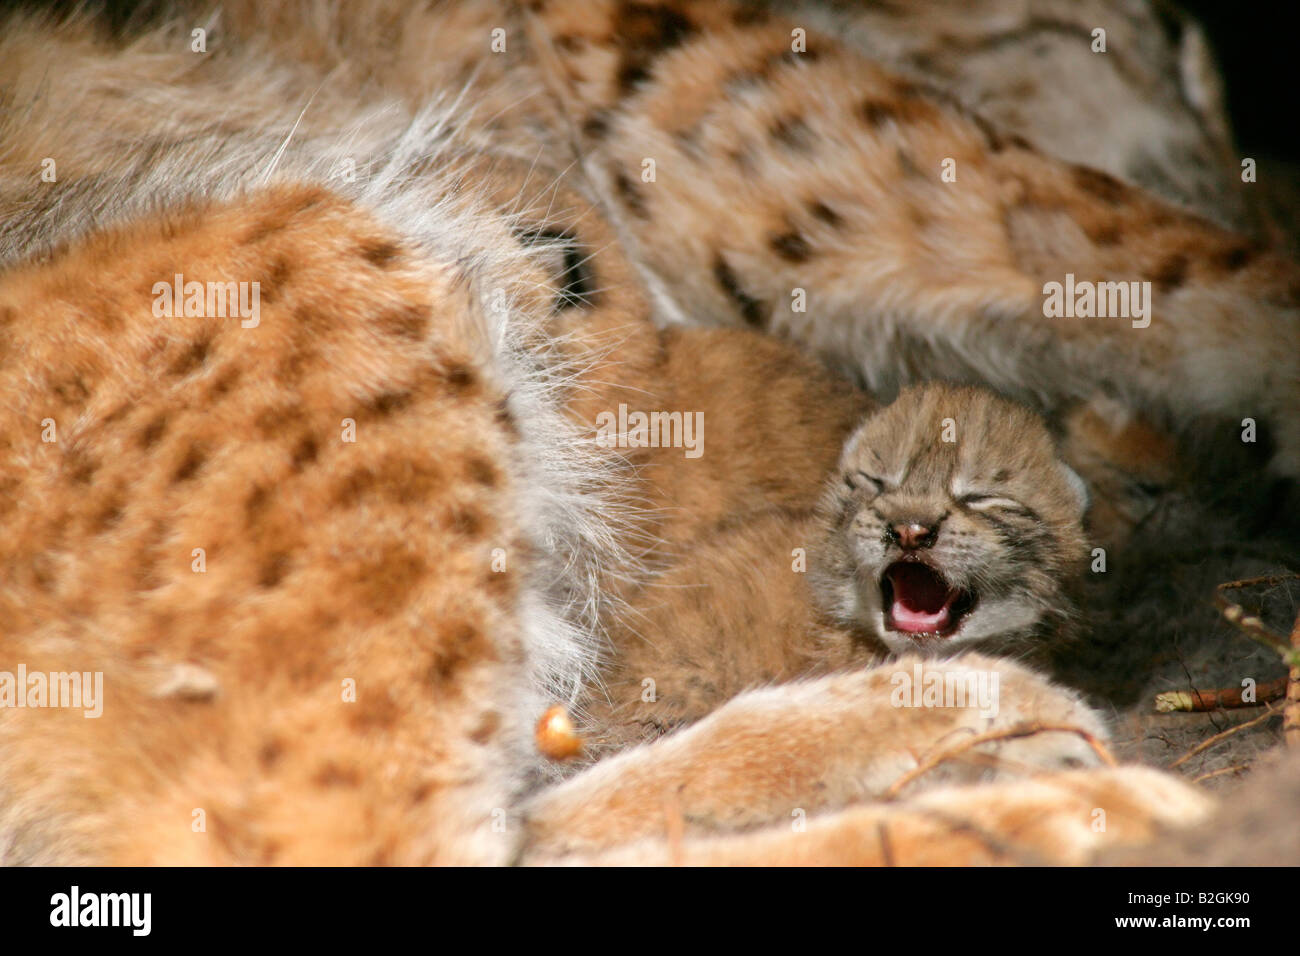 Presa de lince euroasiático catkin amor maternal de la madre de cerca Lynx lynx caricias Baviera Alemania Foto de stock